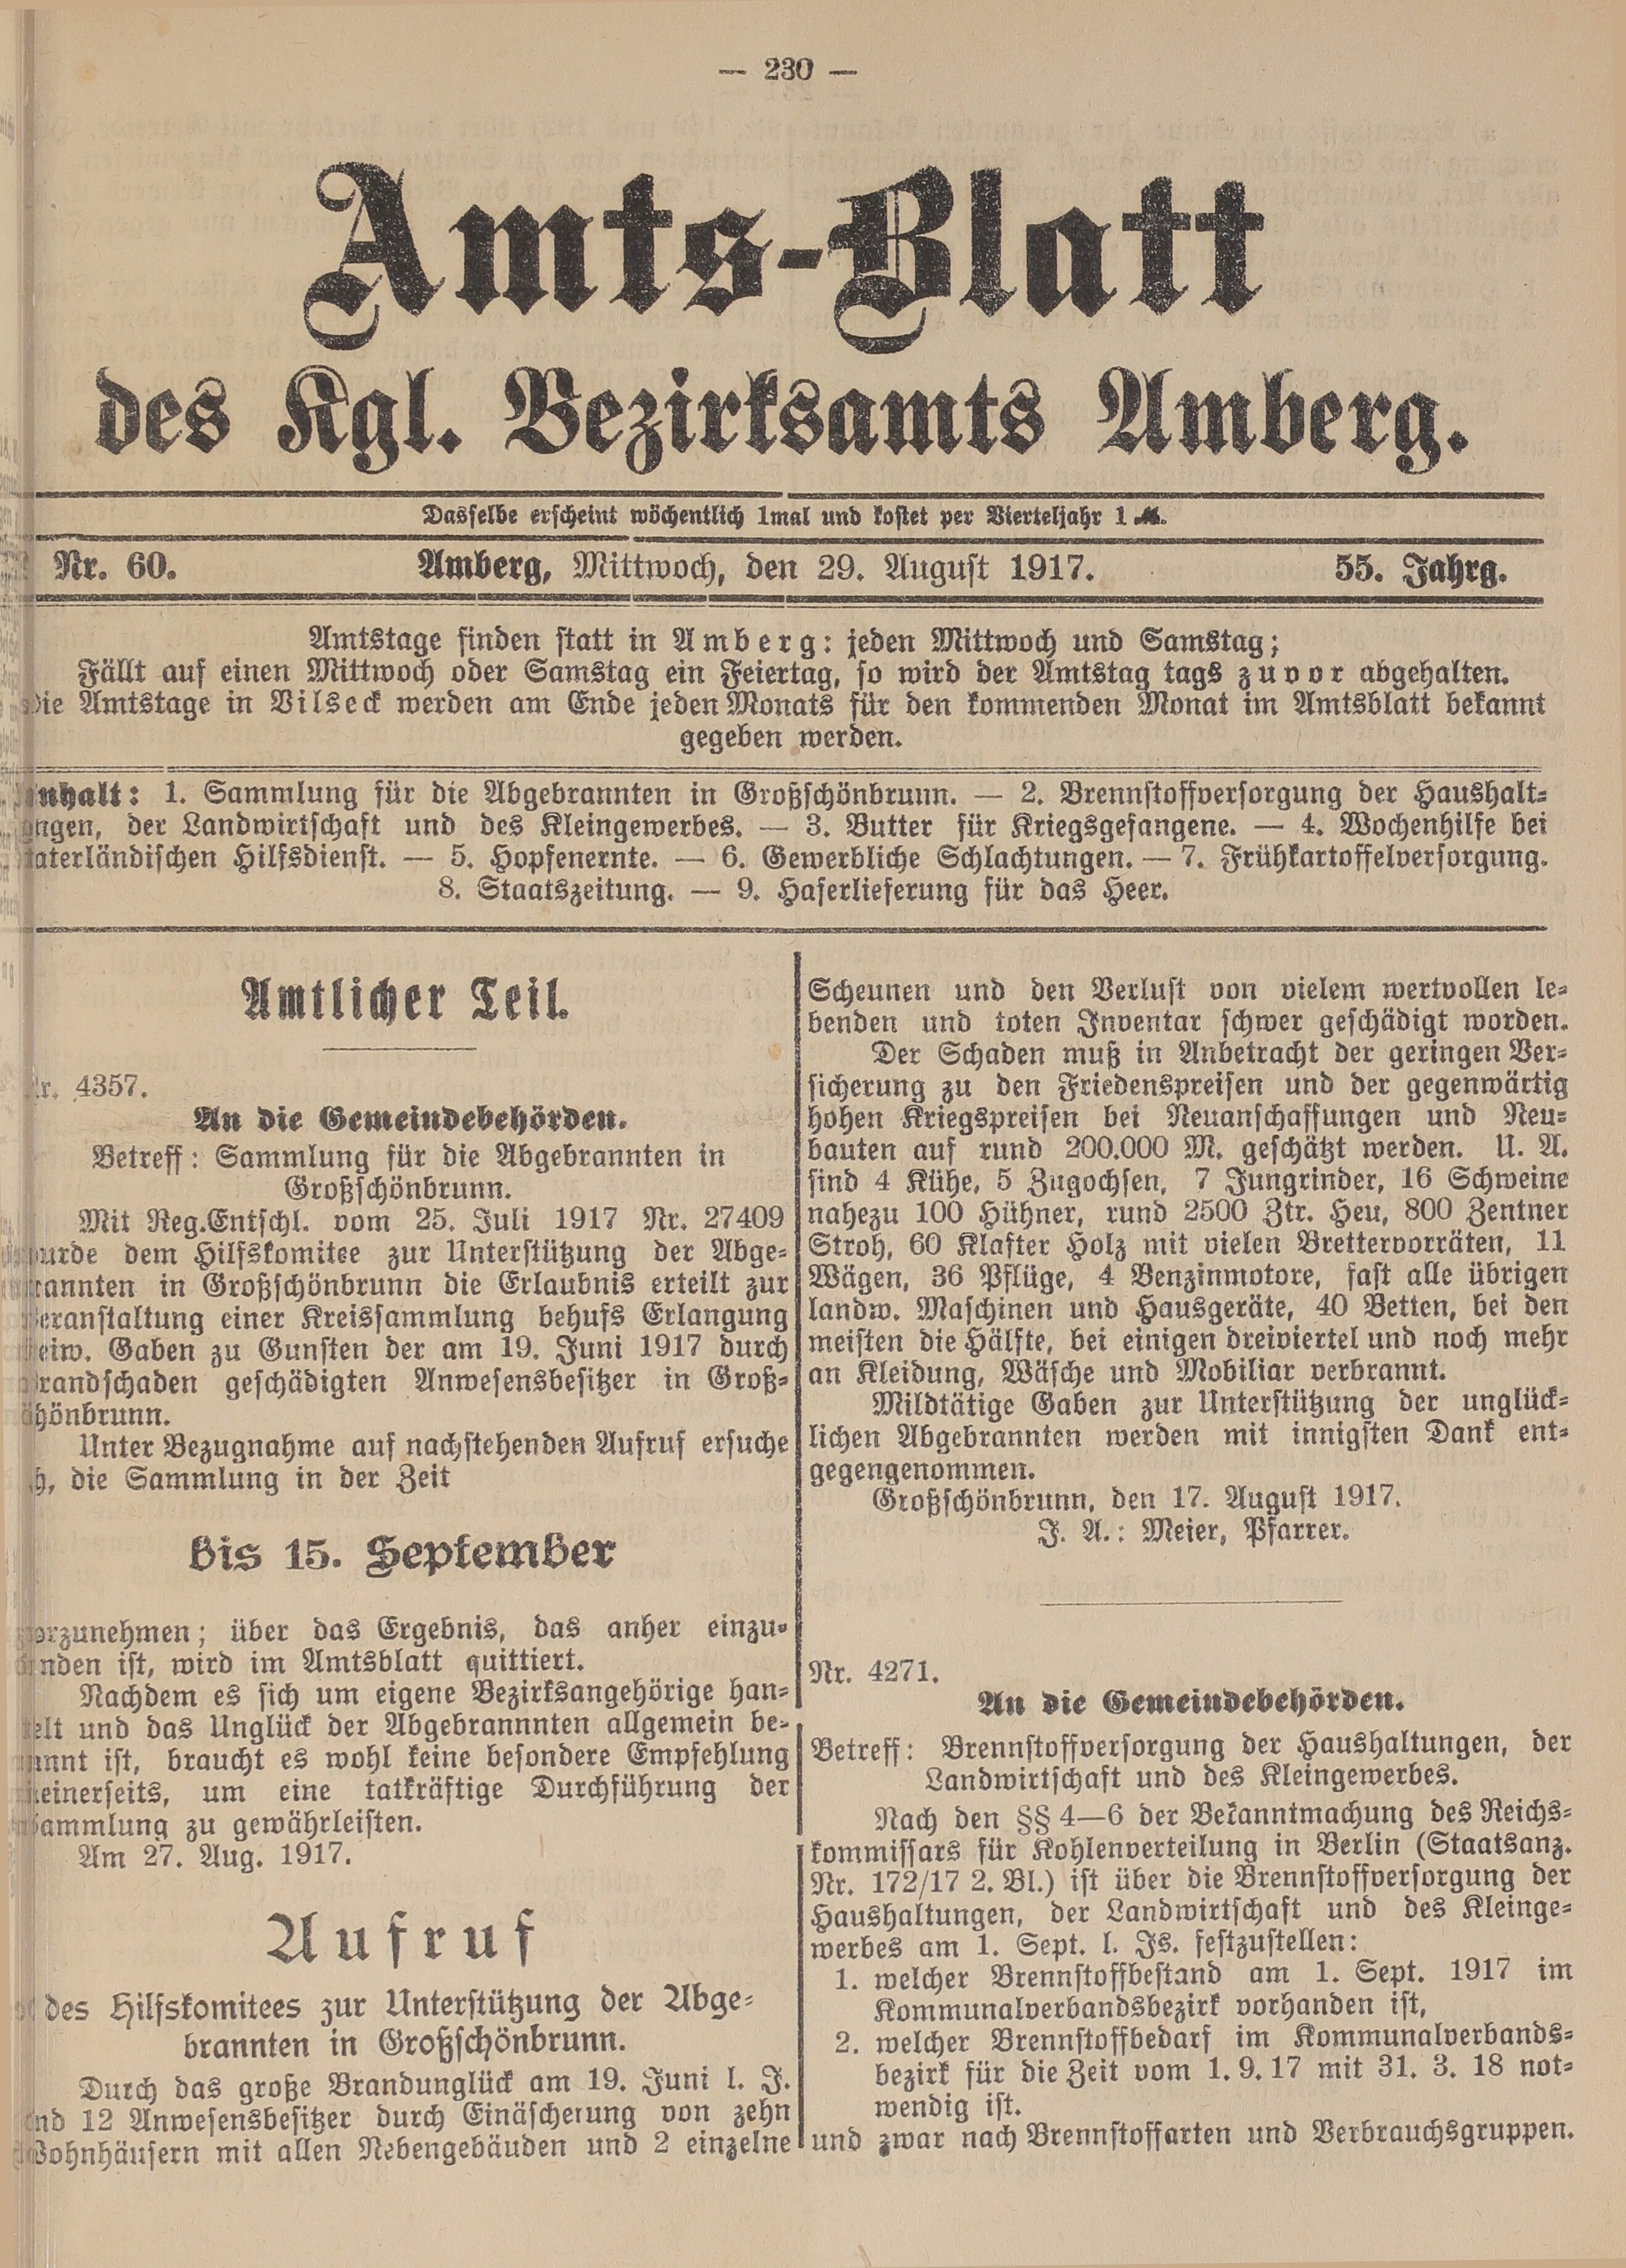 1. amtsblatt-amberg-1917-08-29-n60_2220